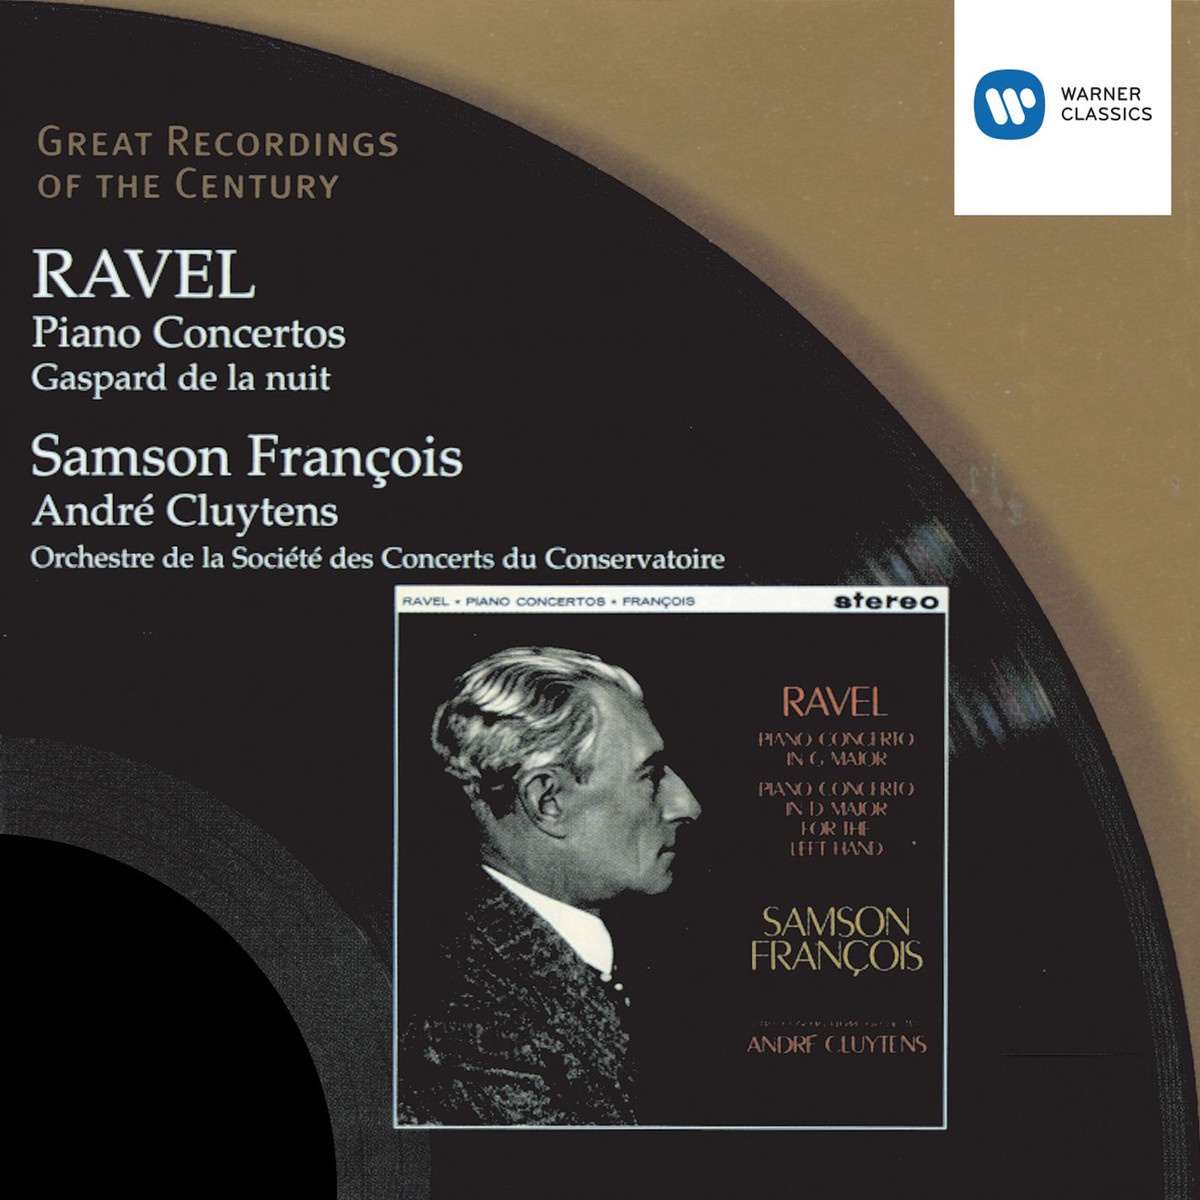 Ravel: Piano Concertos/Gaspard de la nuit